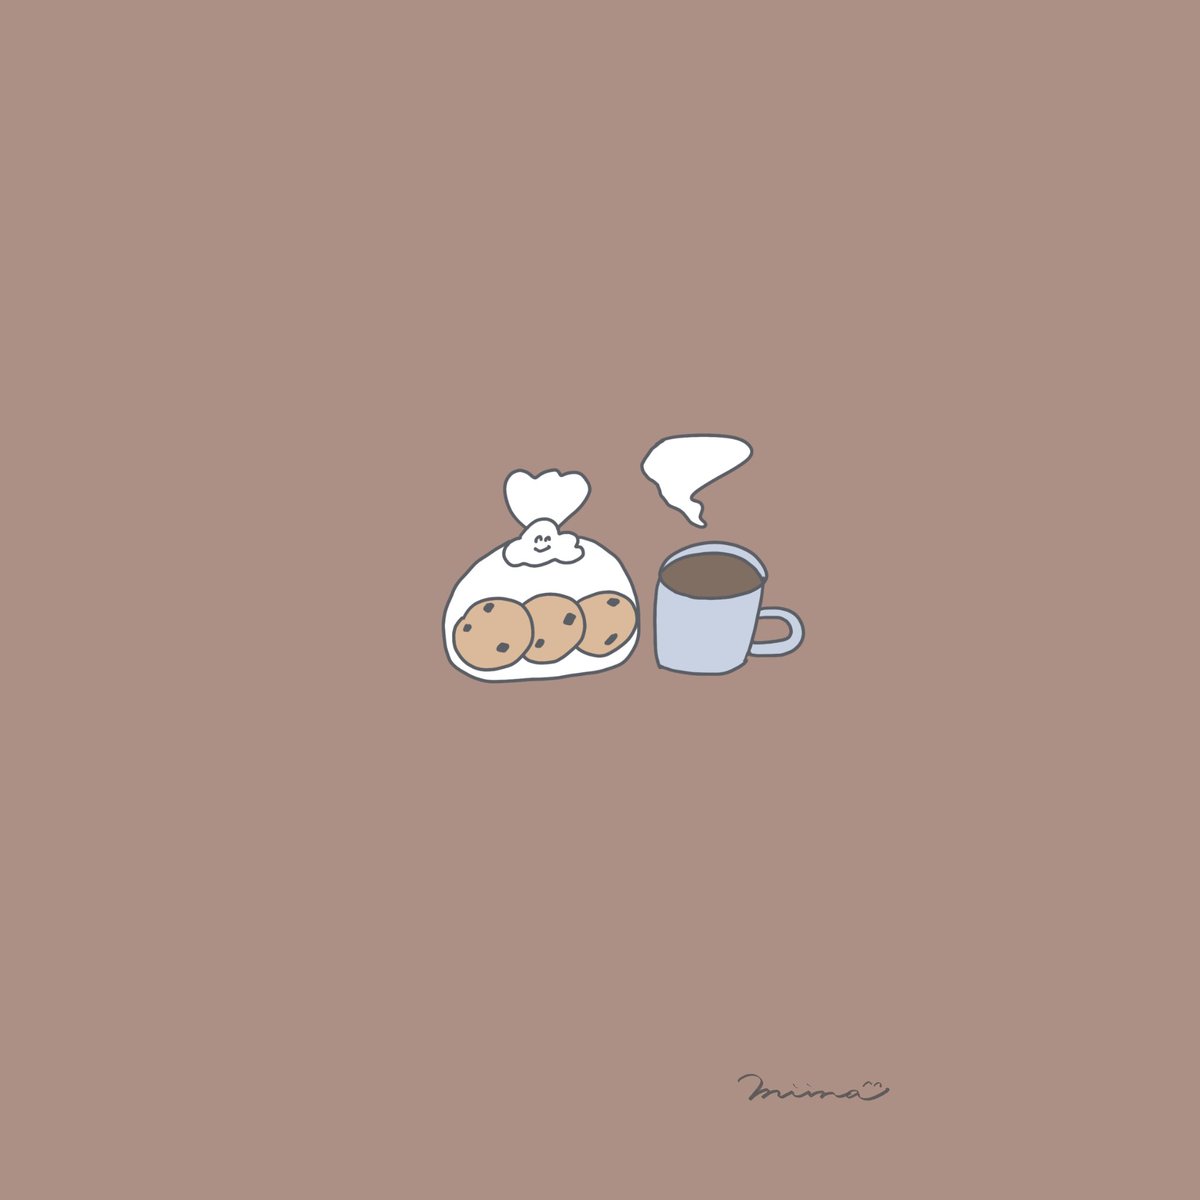 Miina ミイナ イラスト 在 Twitter 上 クッキーとコーヒー ひとやすみ ストーリー 壁紙 シンプルイラスト ゆるいイラスト ほんわかイラスト 線画 絵描きさんと繋がりたい イラスト好きな人と繋がりたい クッキー コーヒー Cookie Coffee